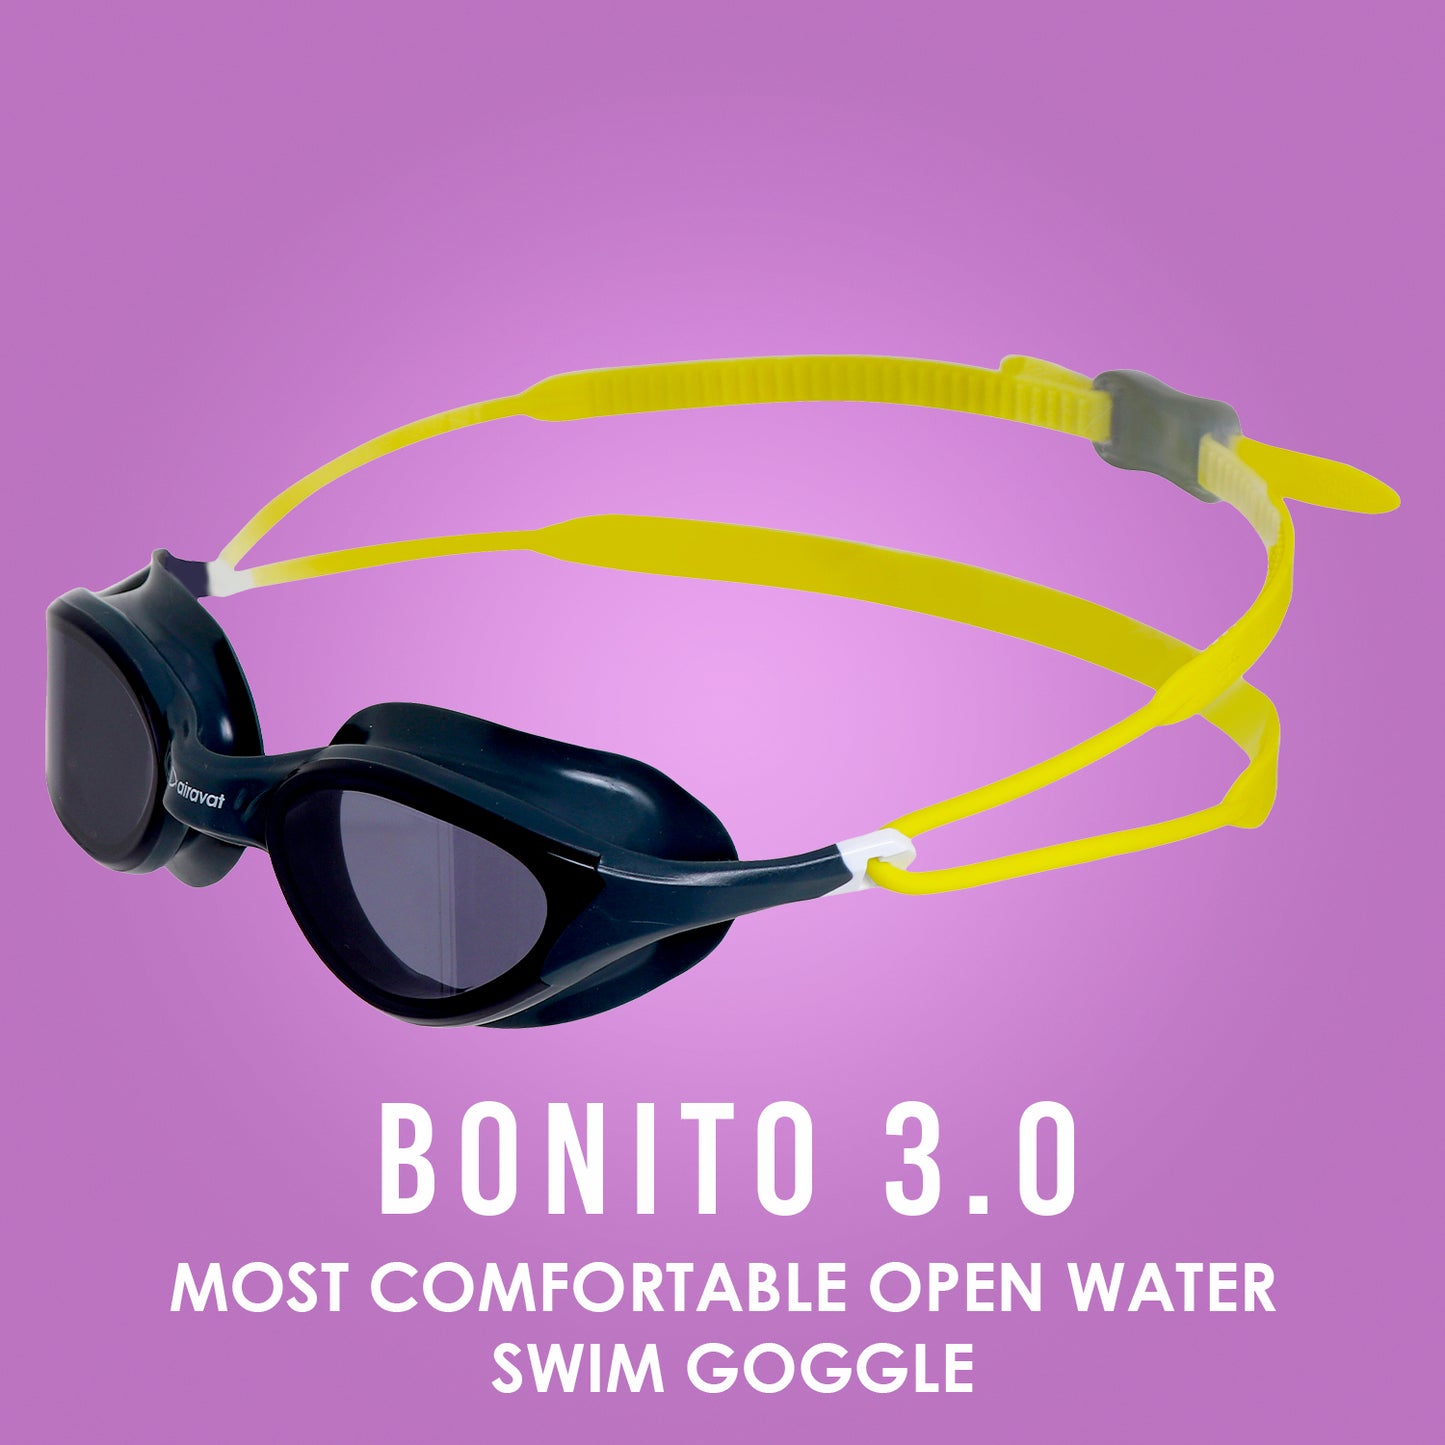 BONITO 3.0